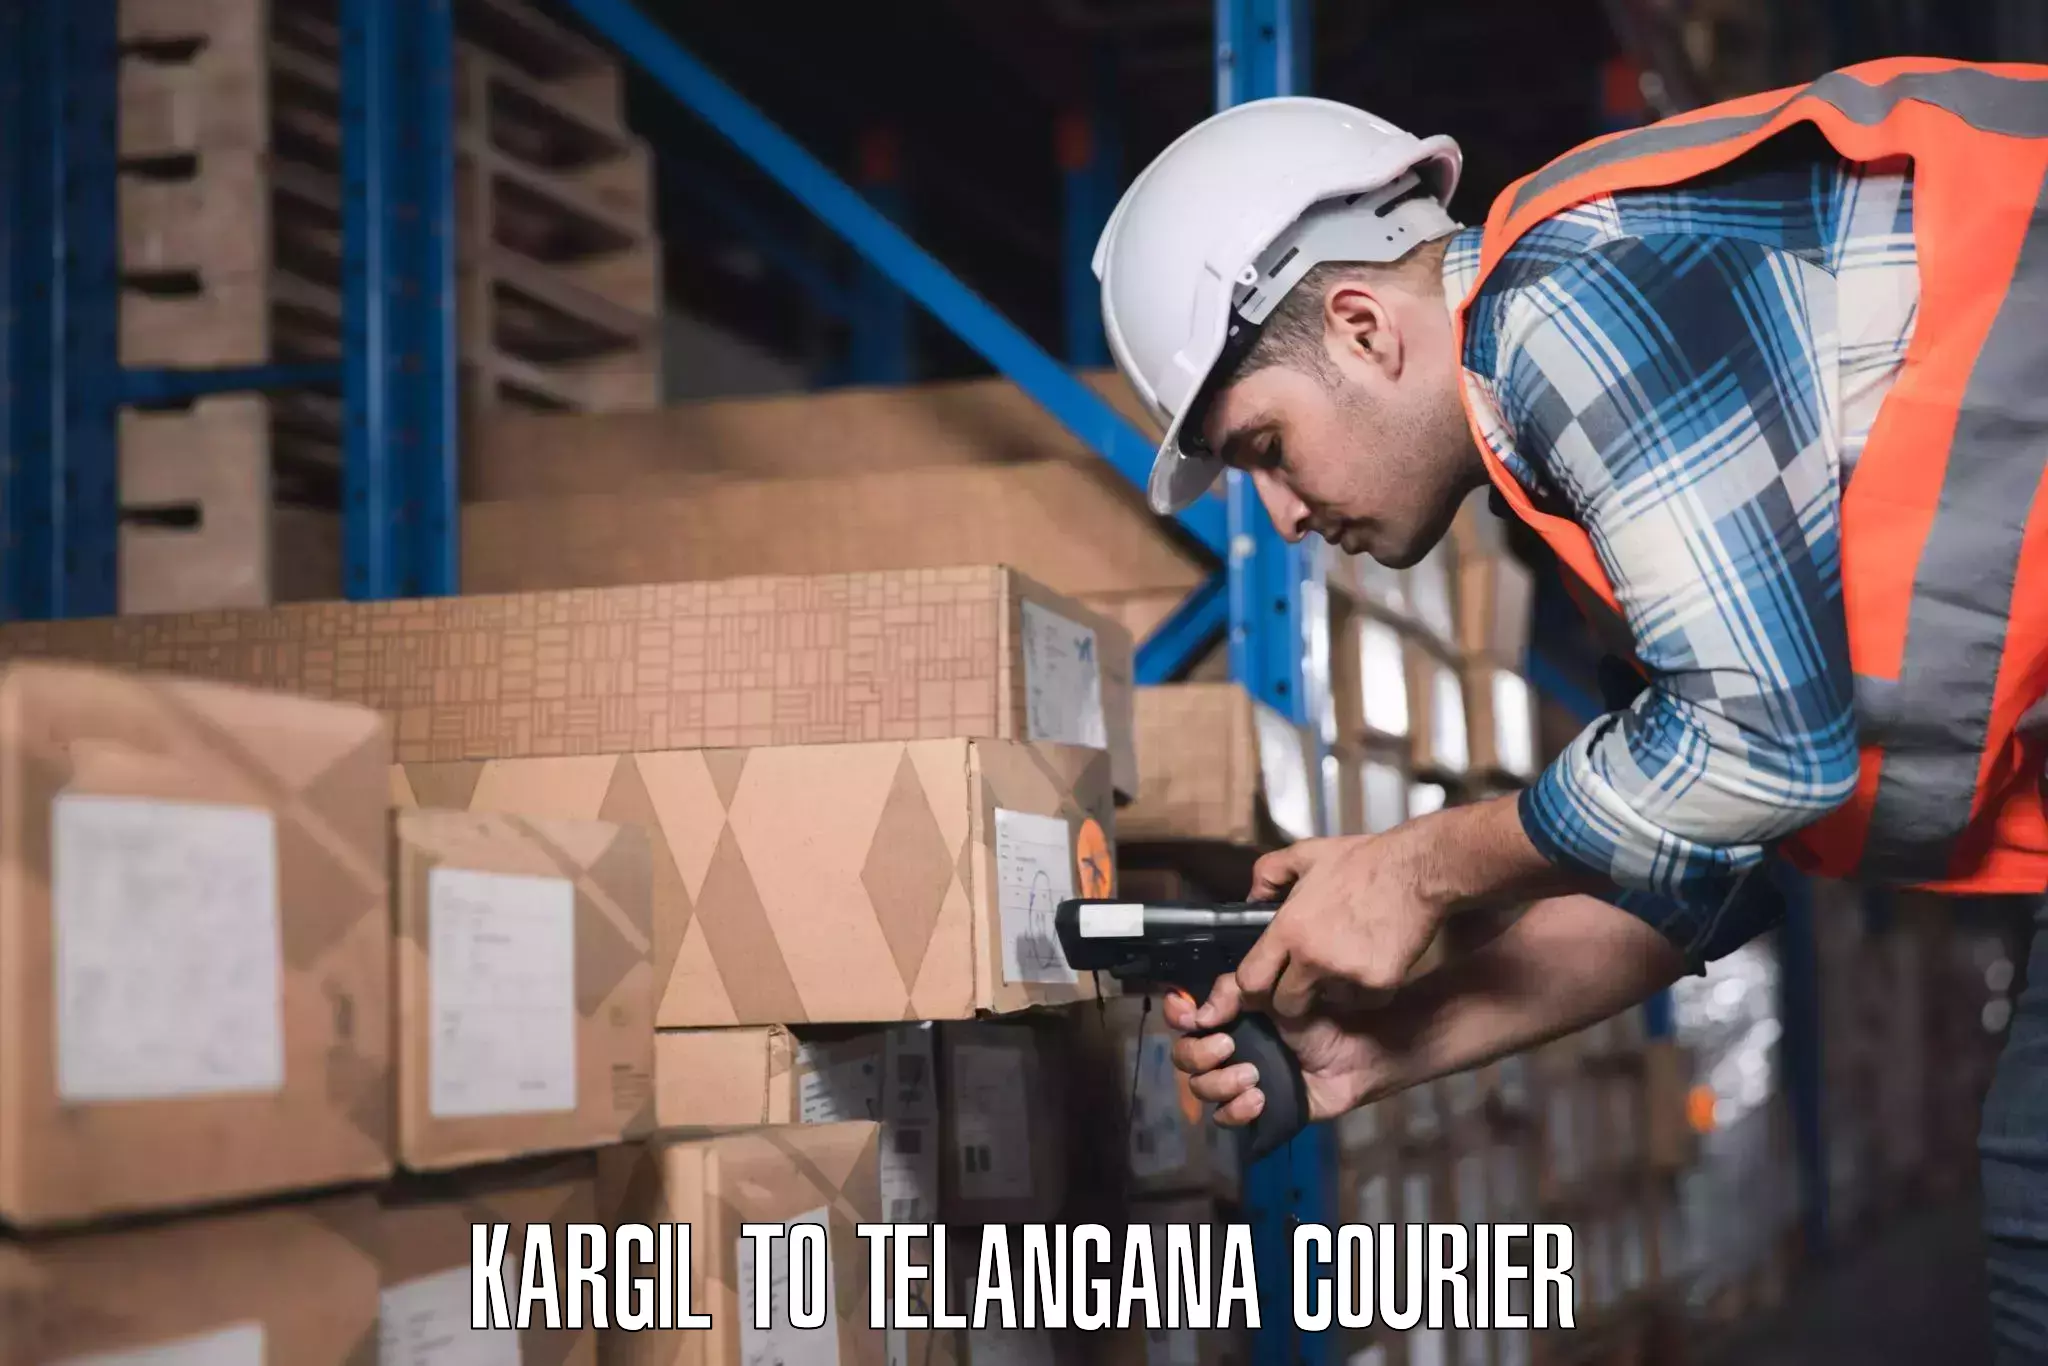 Baggage courier pricing in Kargil to Warangal